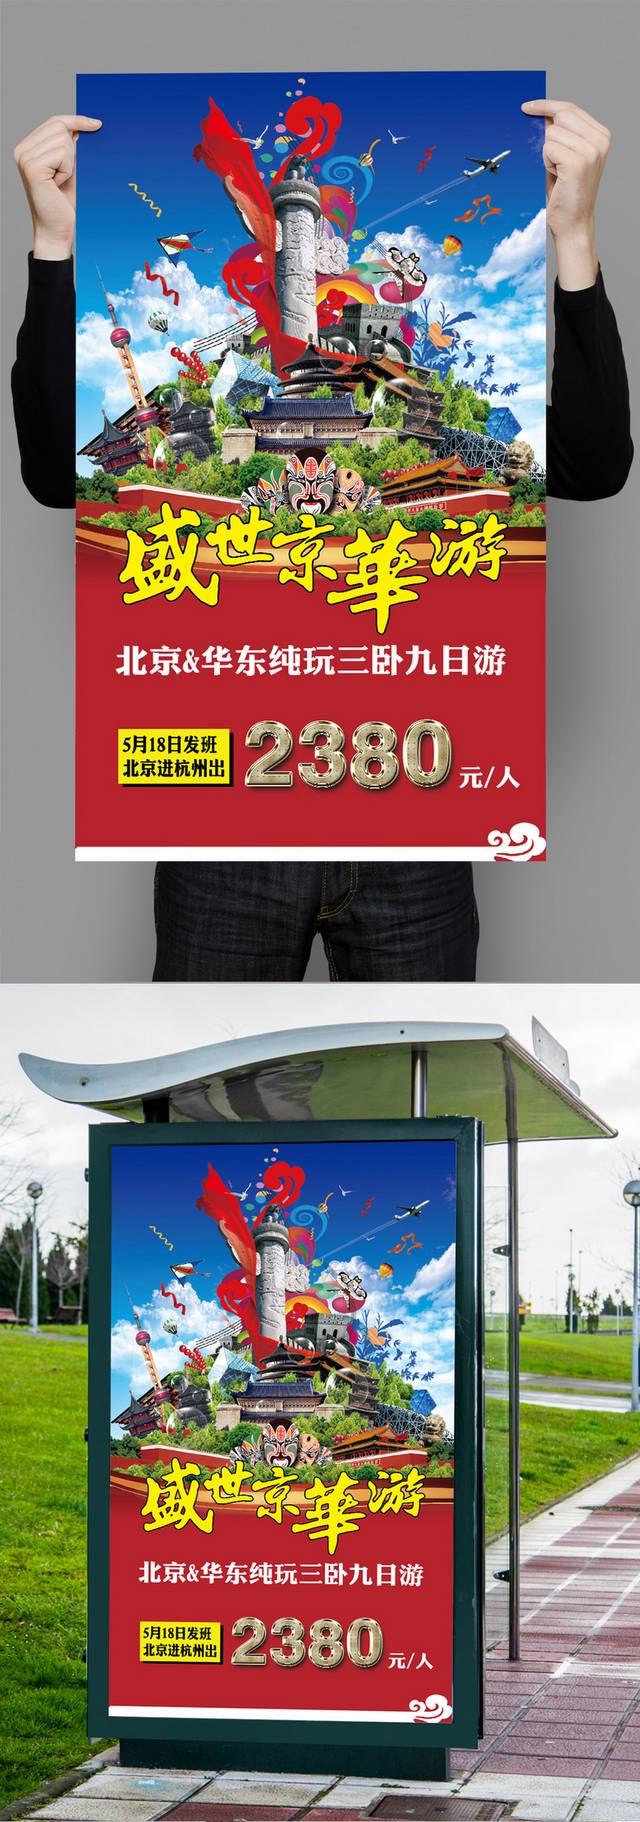 畅游中国旅游海报设计